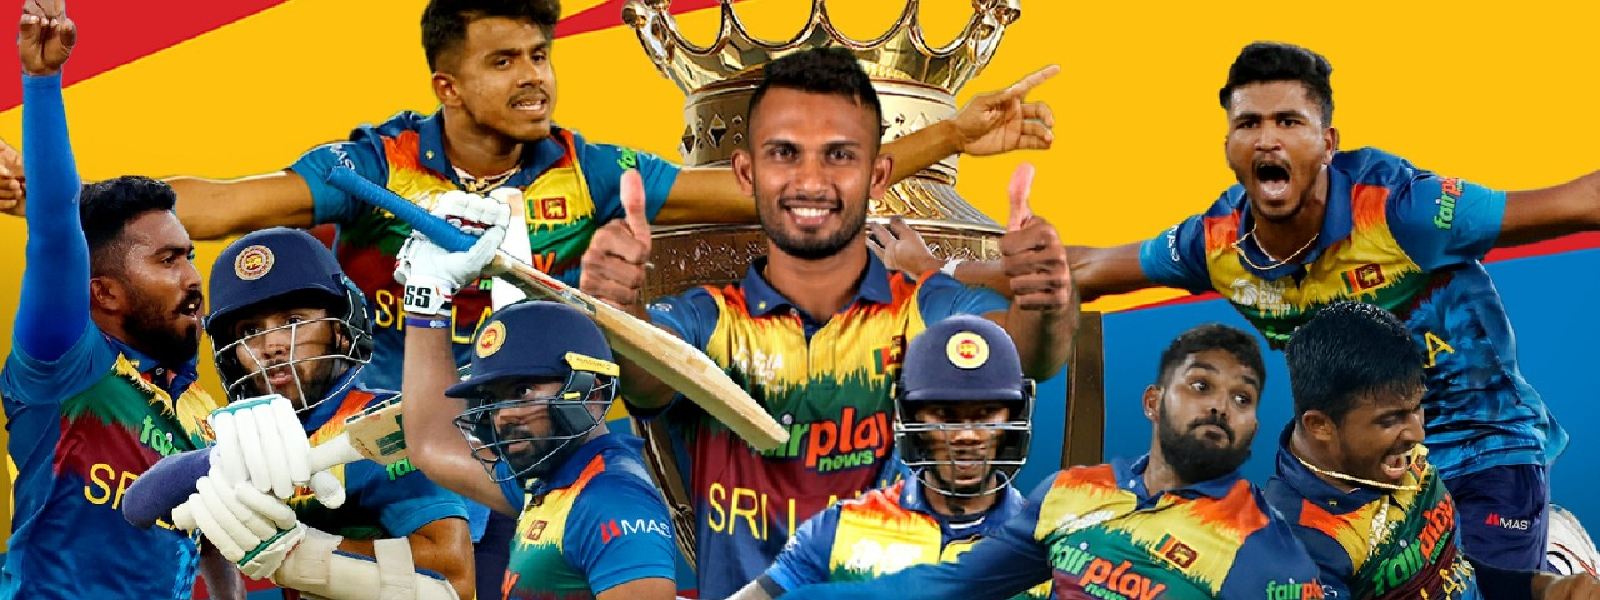 Sri Lanka beat Pakistan To Win 6th Asia Cup Title